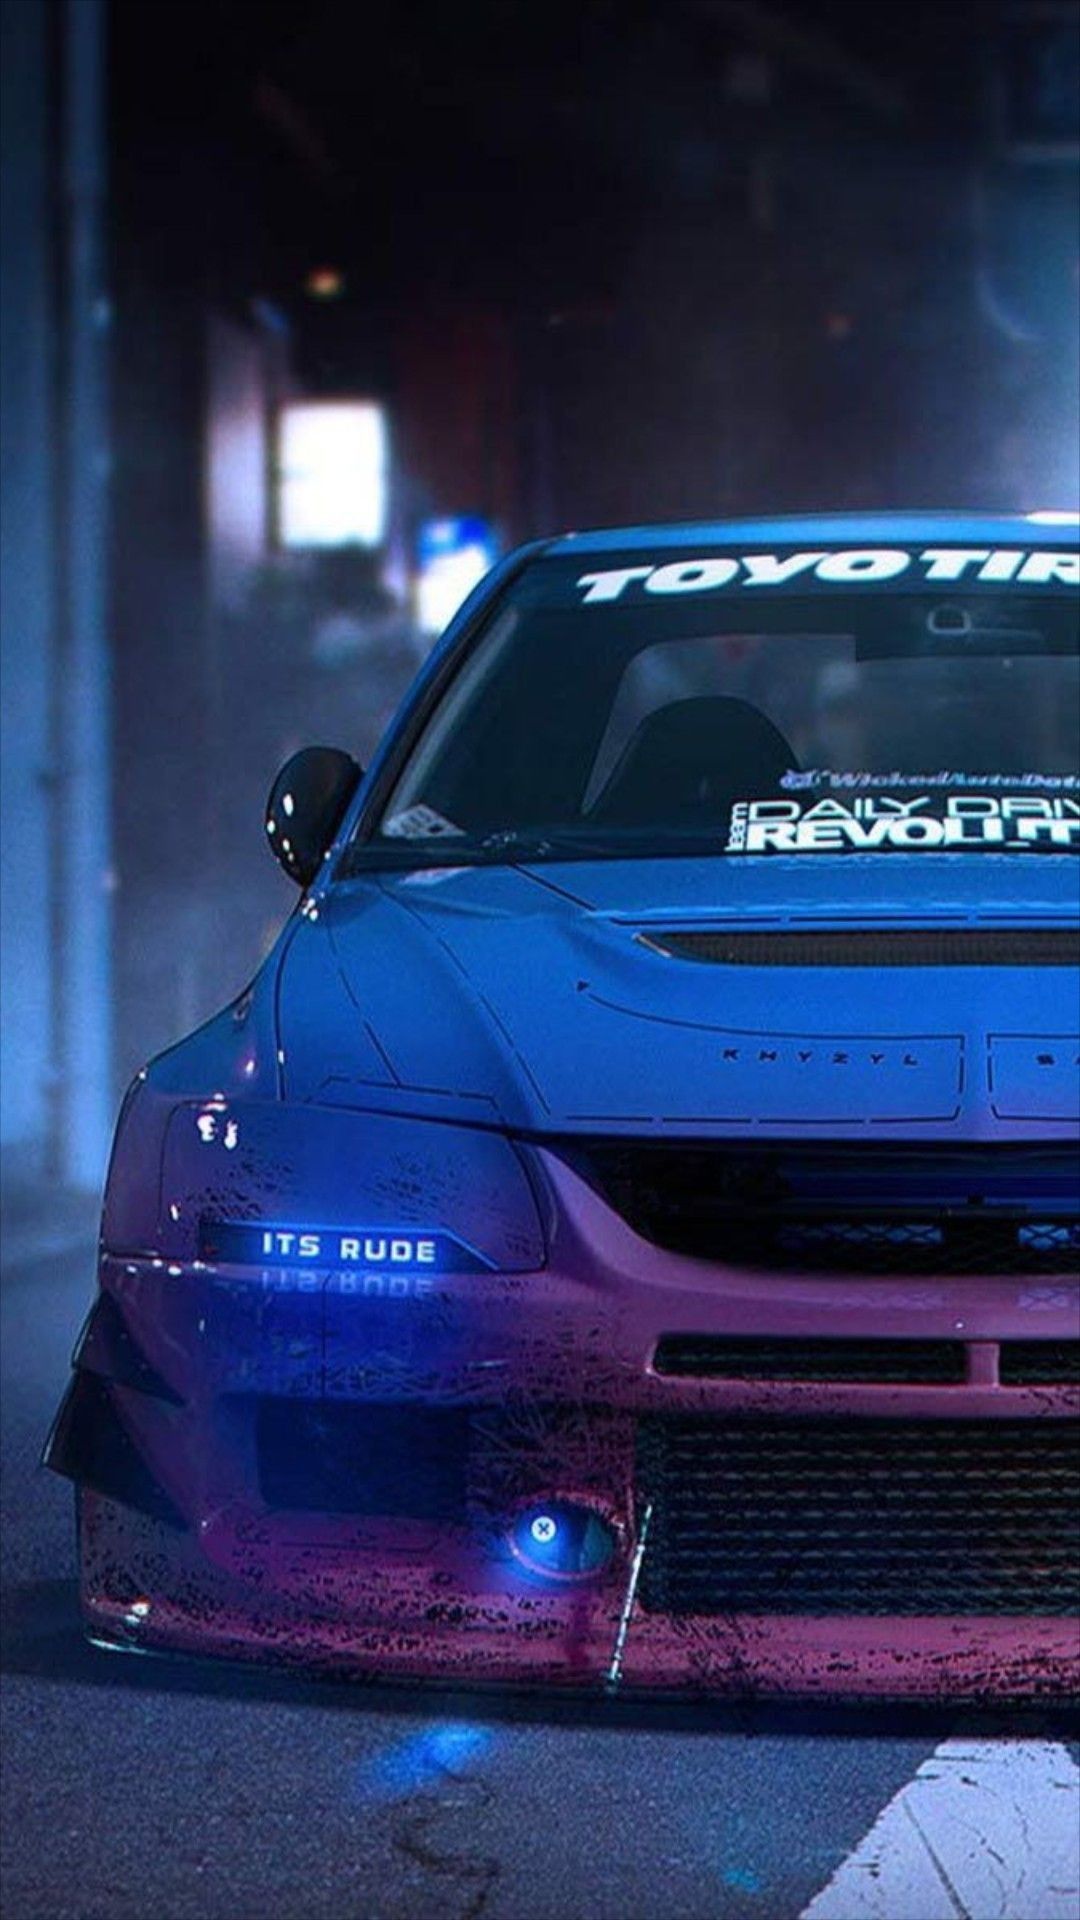 Tokyo Drift Wallpaper - Forza 5 Fast & Furious Car Build : Tokyo Drift ...